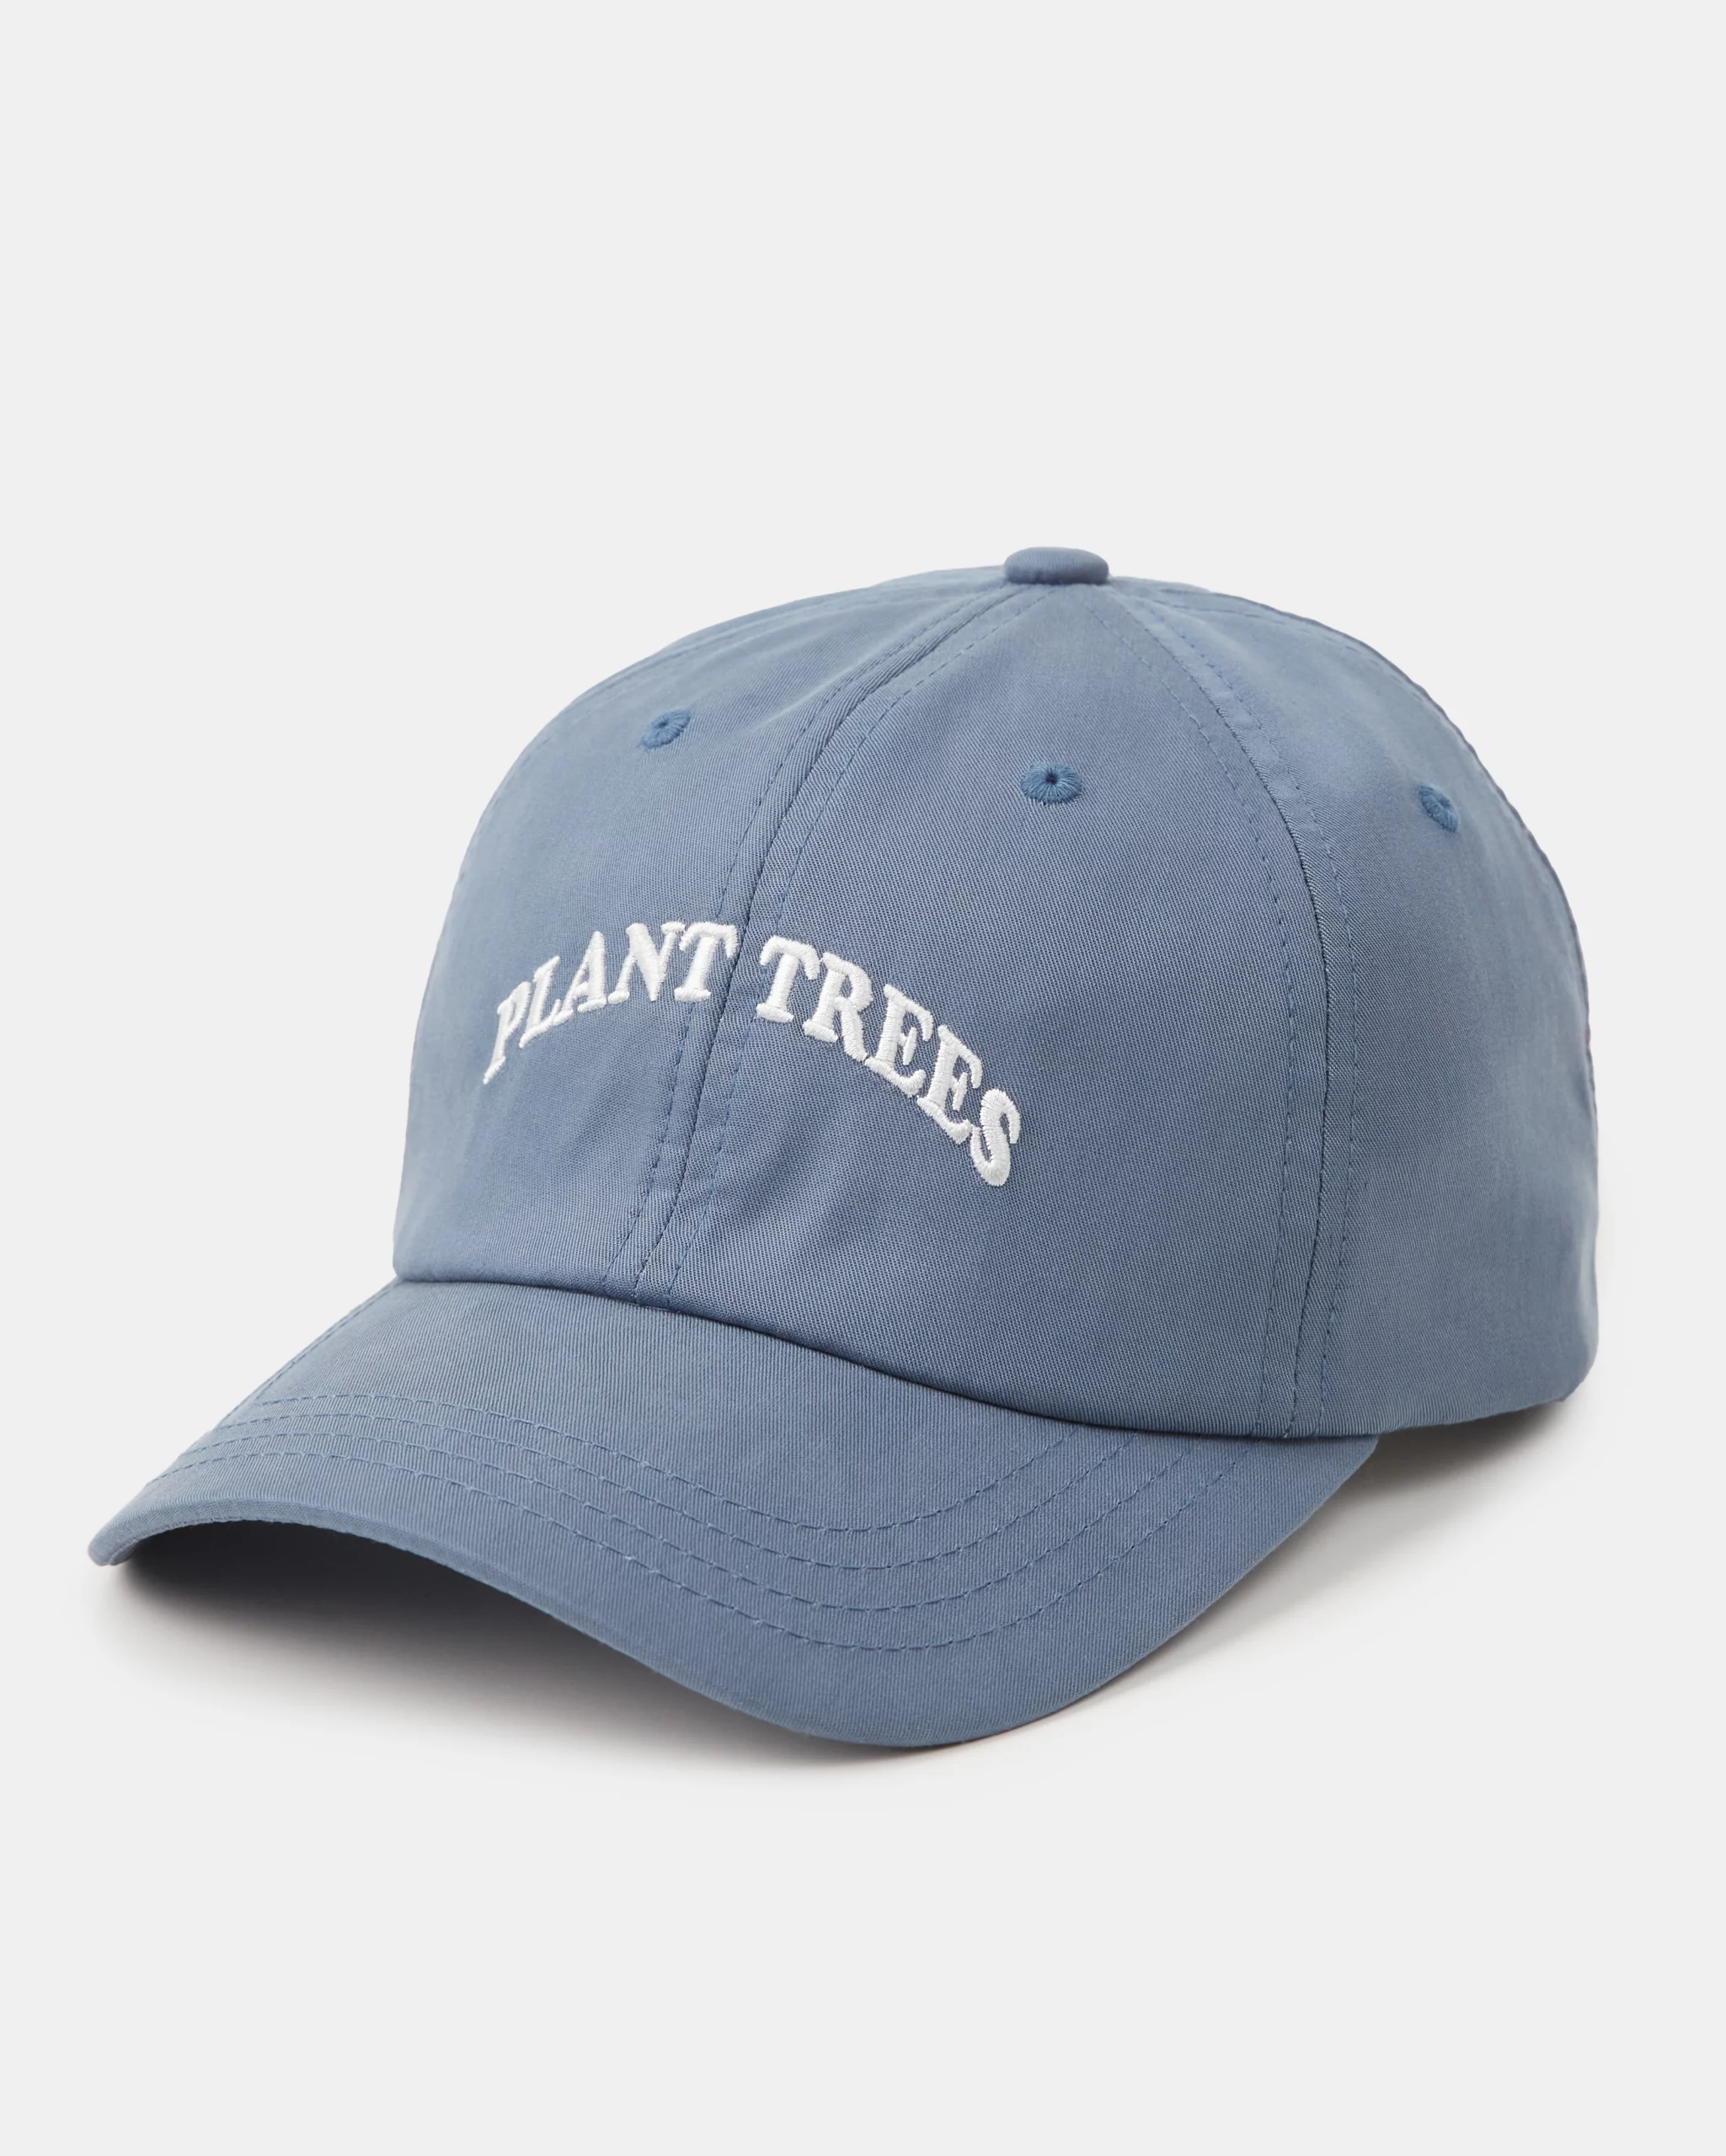 best hat for each season